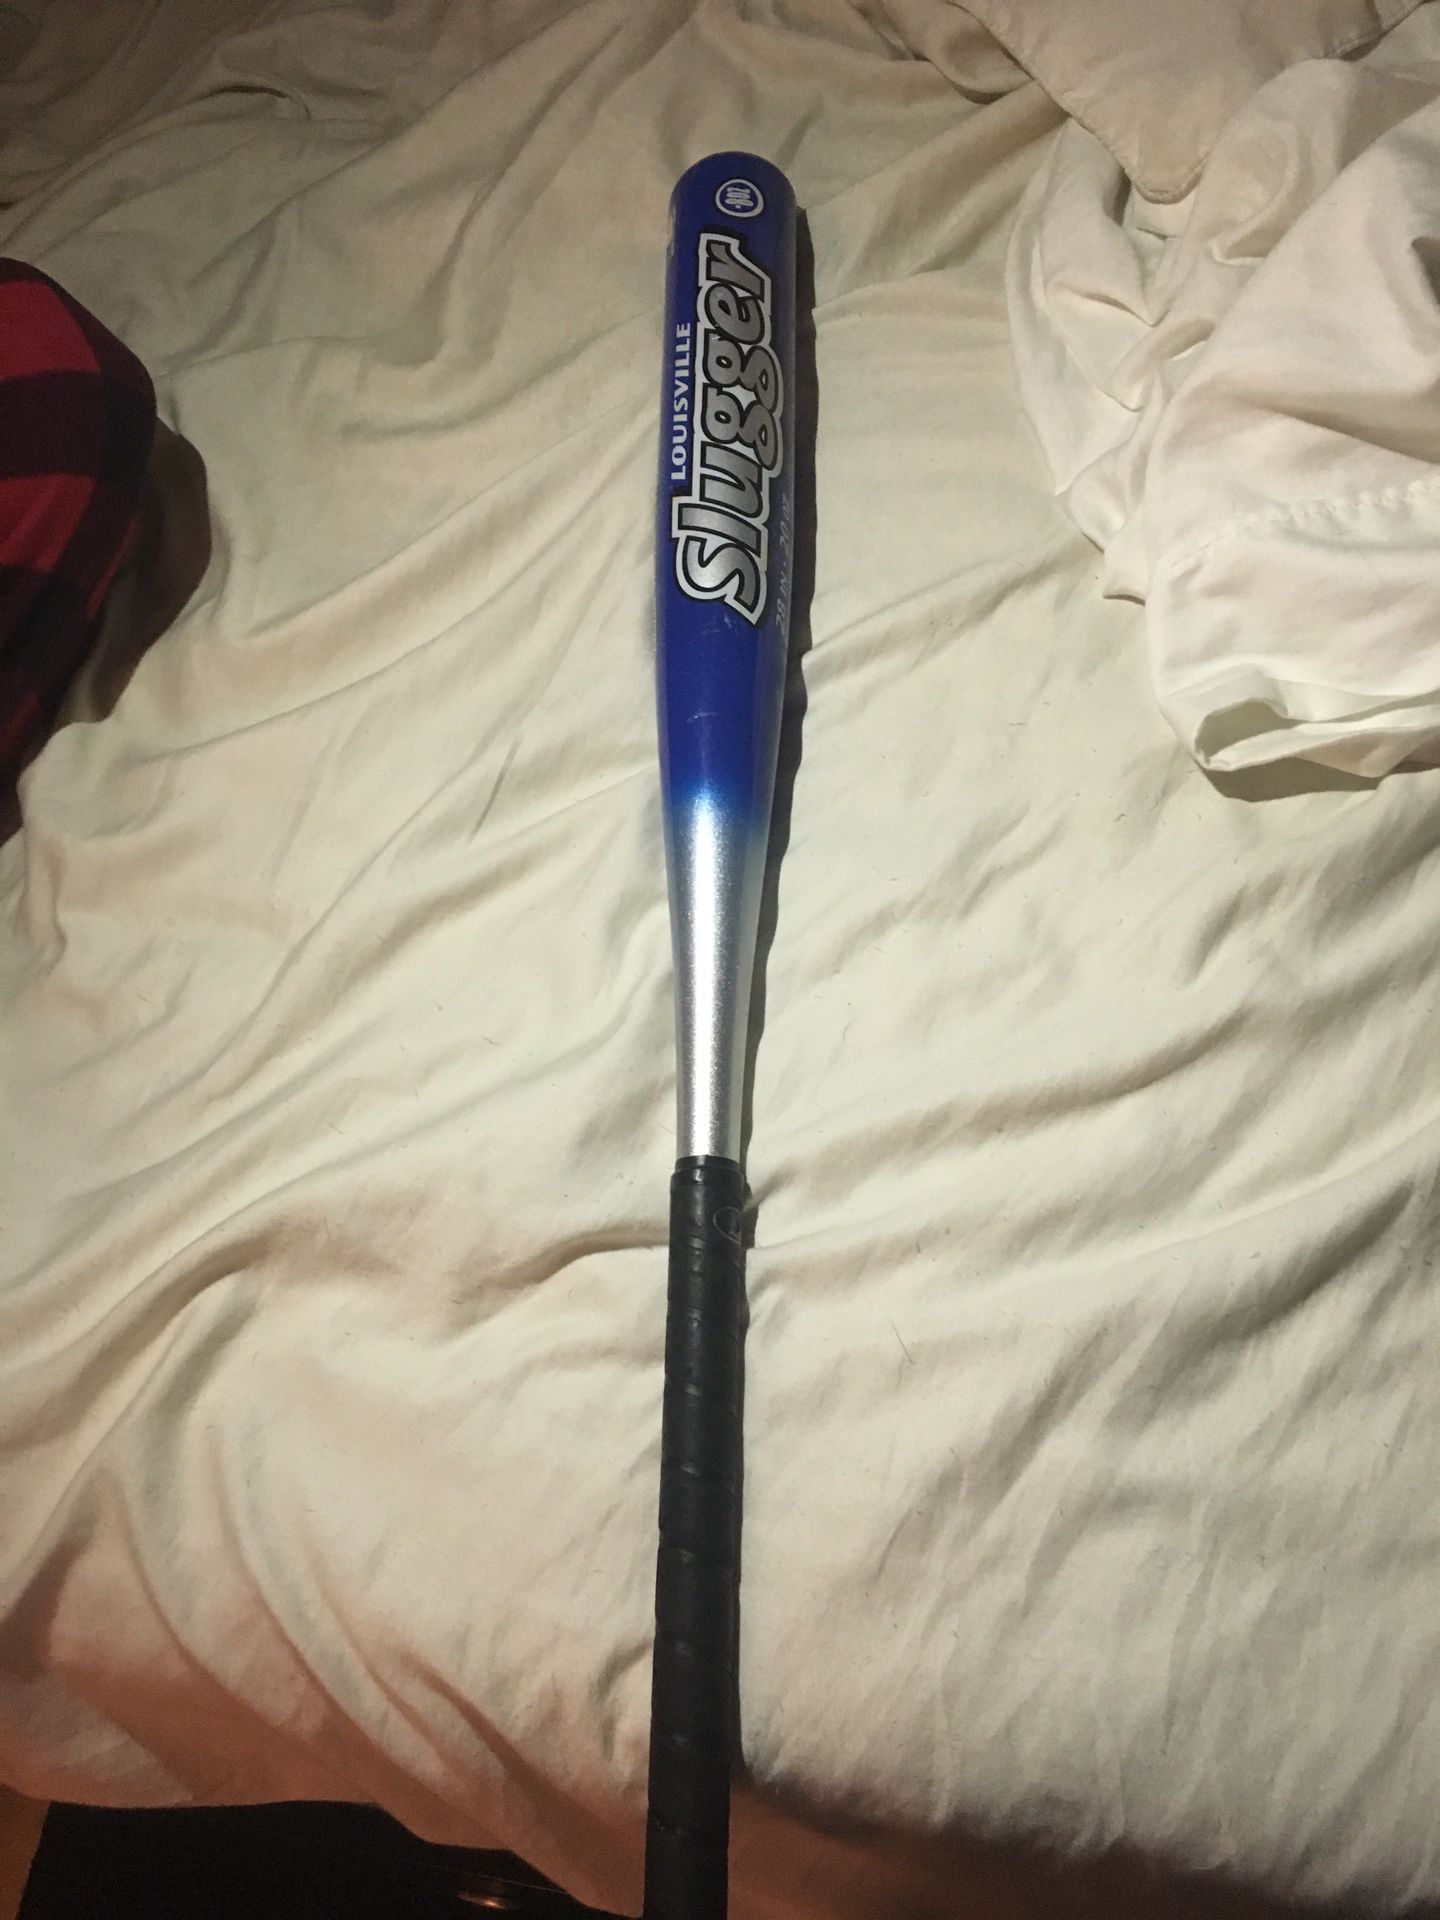 Slugger baseball bat